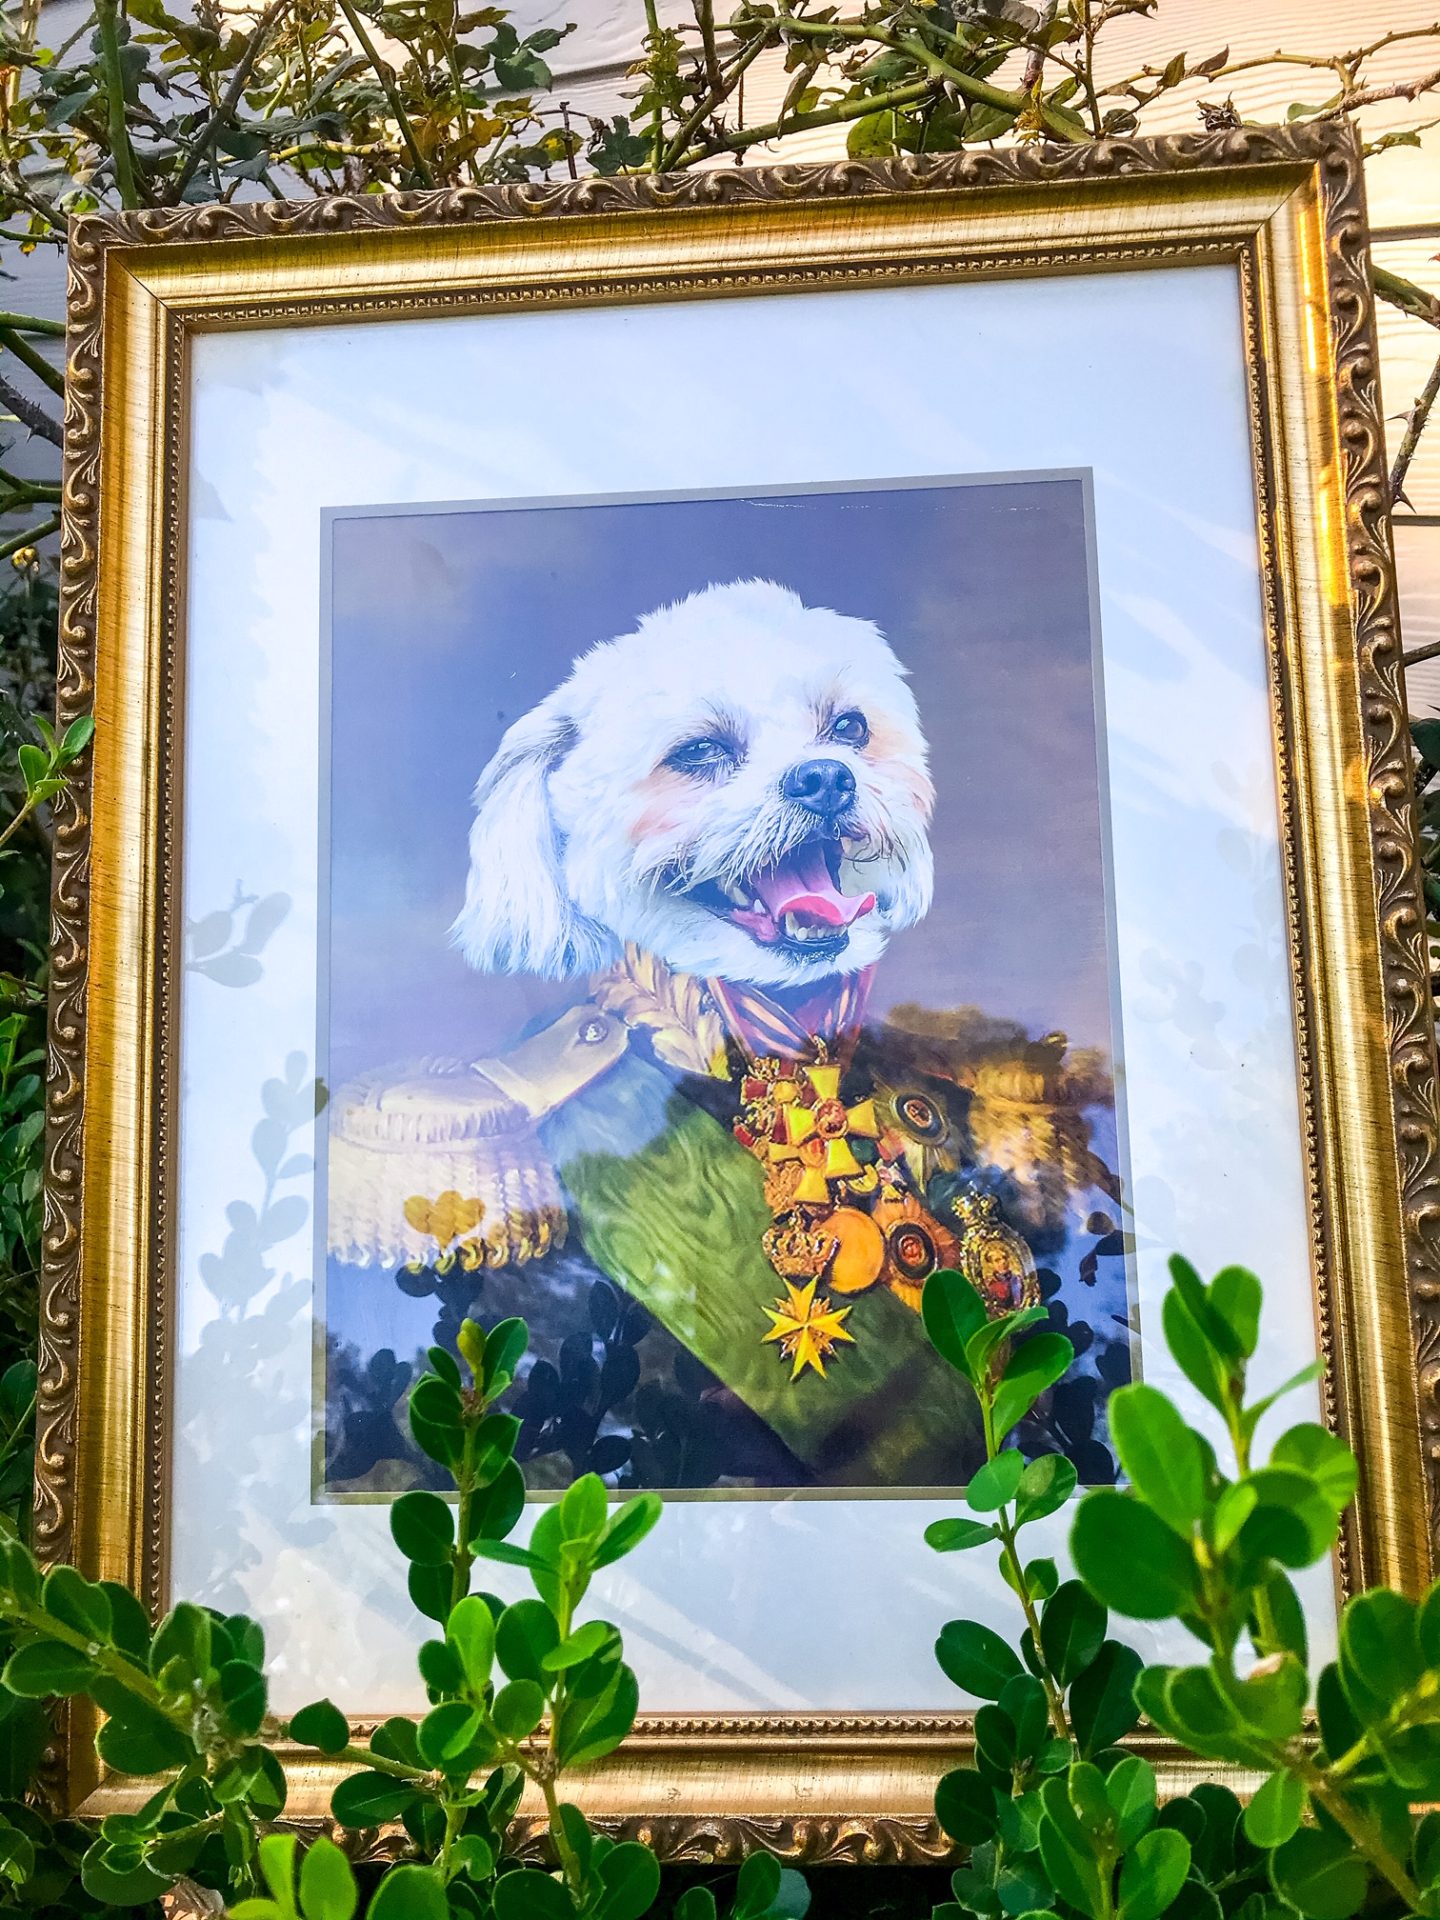 5 Unique Pet Portraits Every Dog Parent Will Love